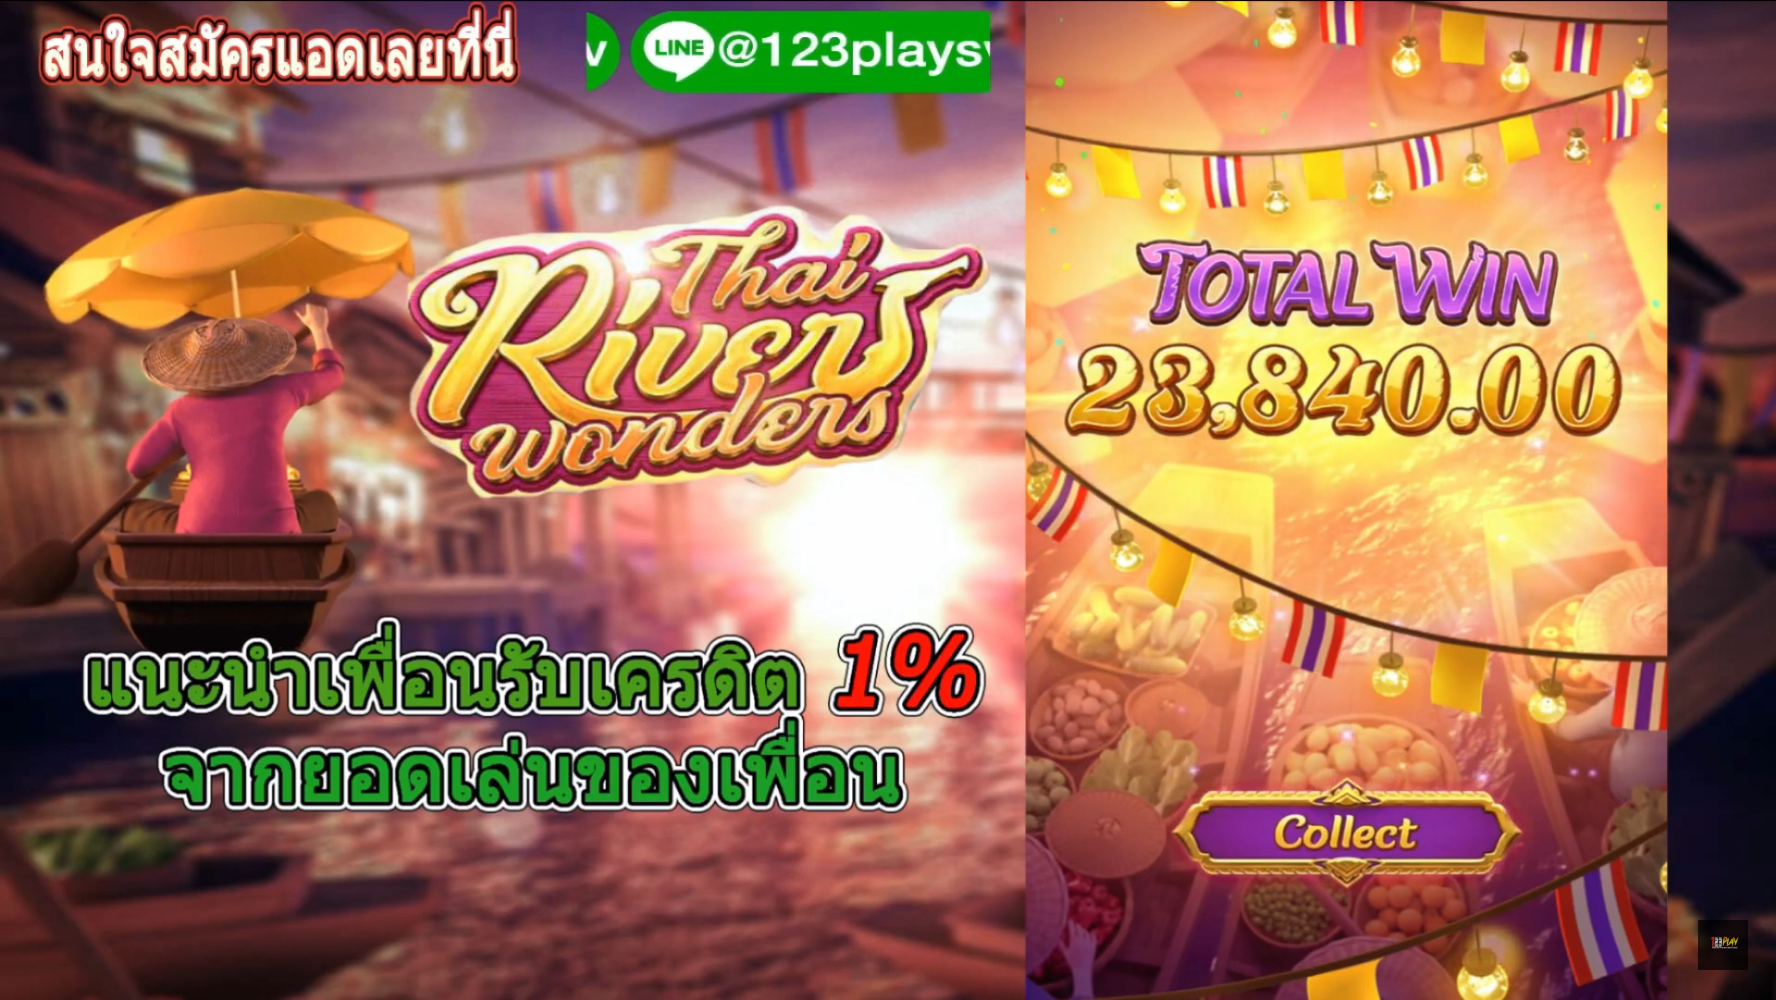 รีวิวสล็อตค่าย PG เกมส์ Thai River Wonders